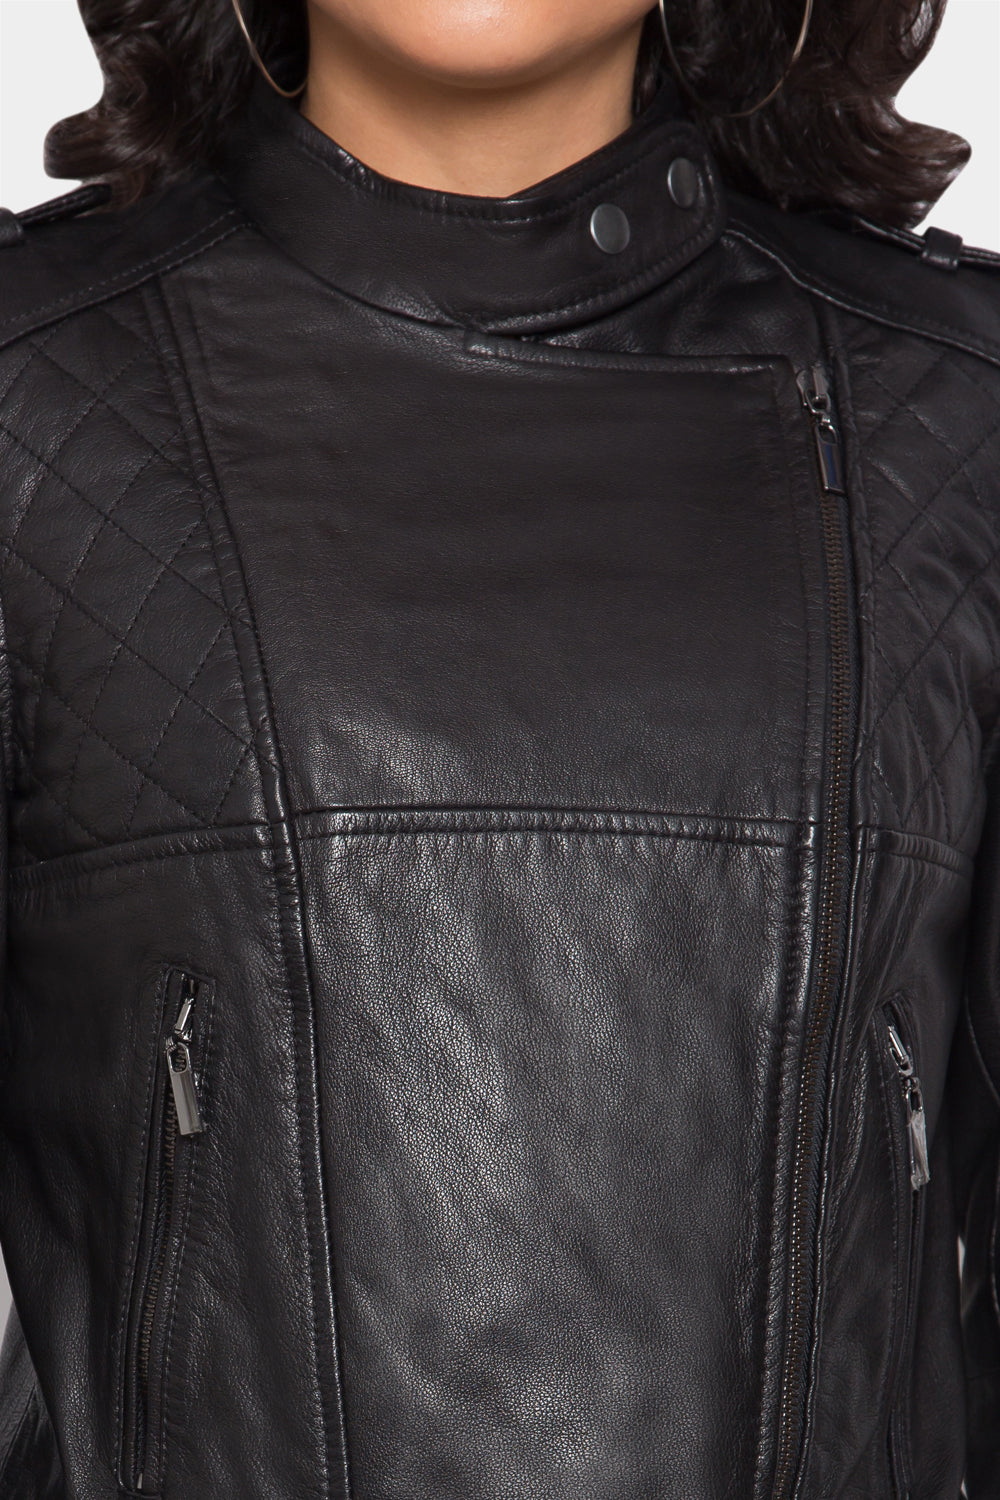 Dark Knight Biker Leather Jacket